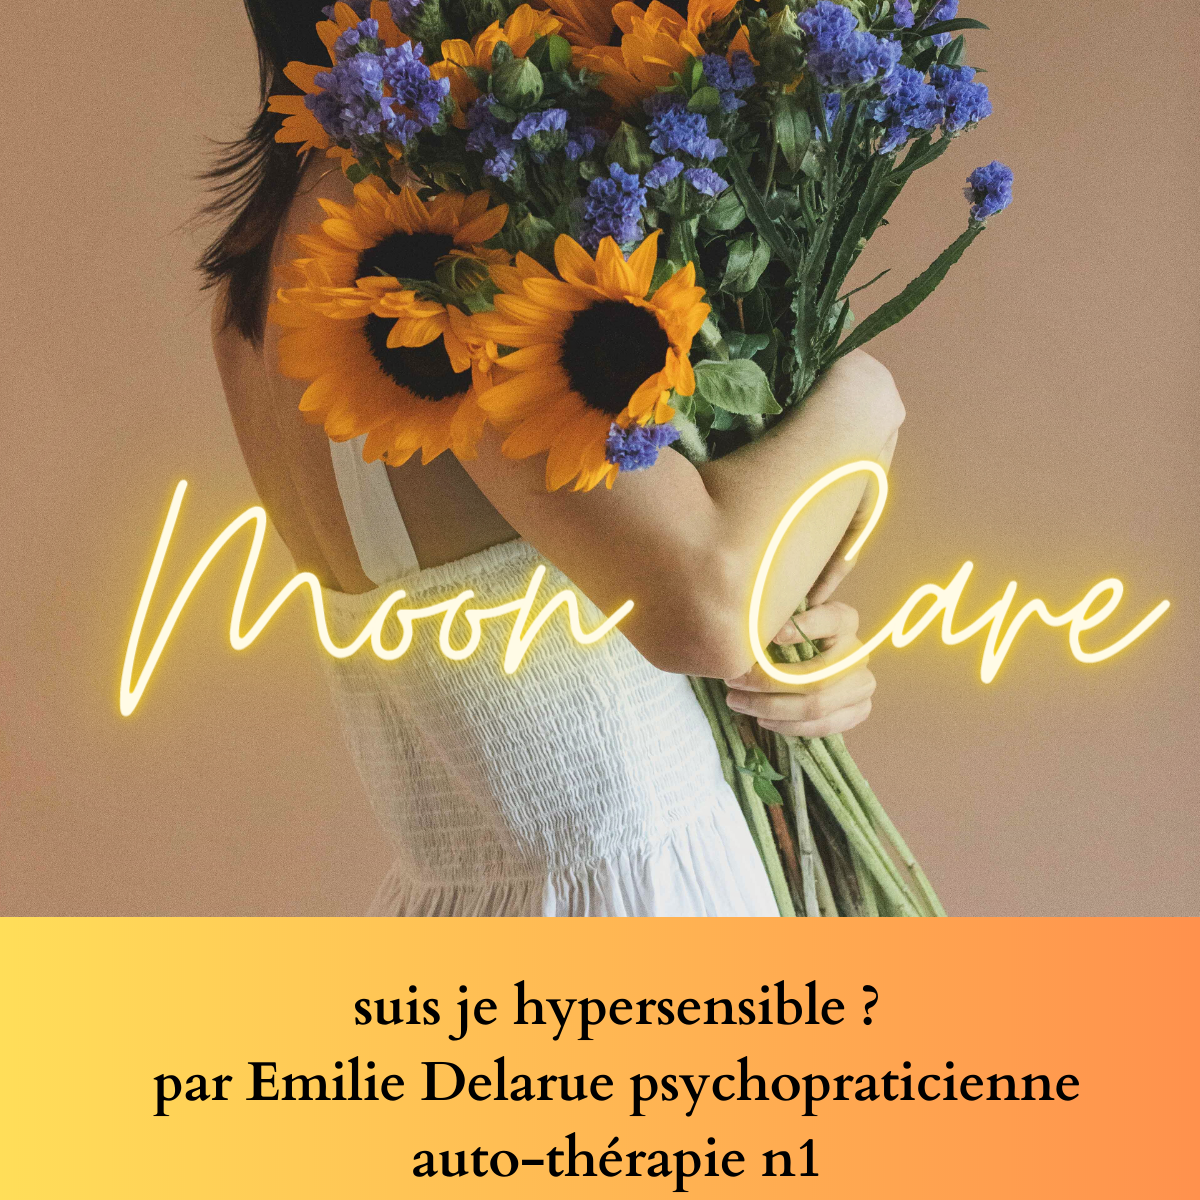 " Suis je hypersensible ? " Séance audio par Emilie Delarue psychopraticienne